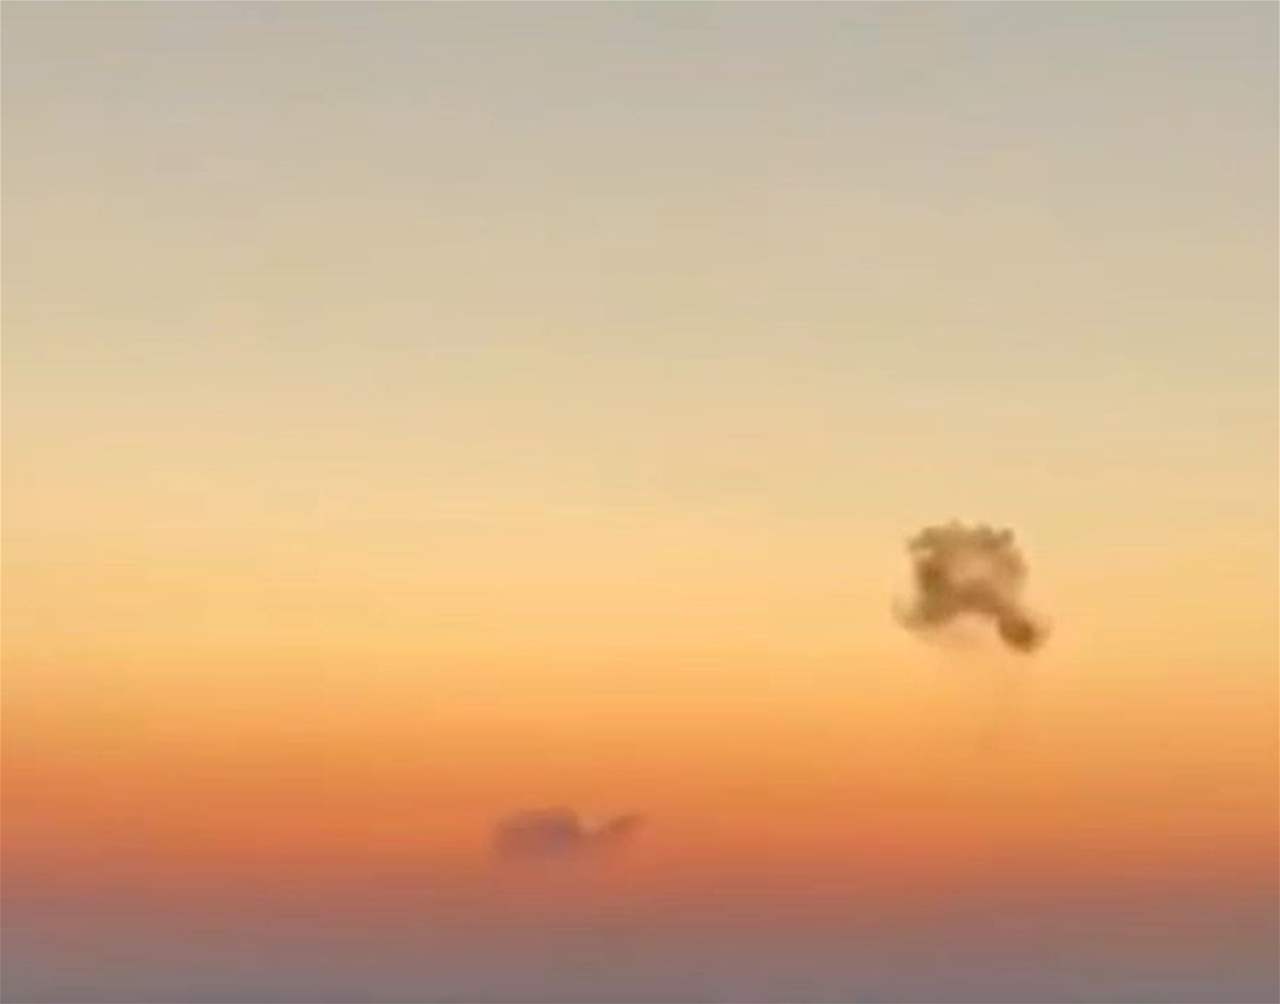 شاهد - فيديو متداول يظهر لحظة إنقضاض طائرة مسيّرة في نهاريا